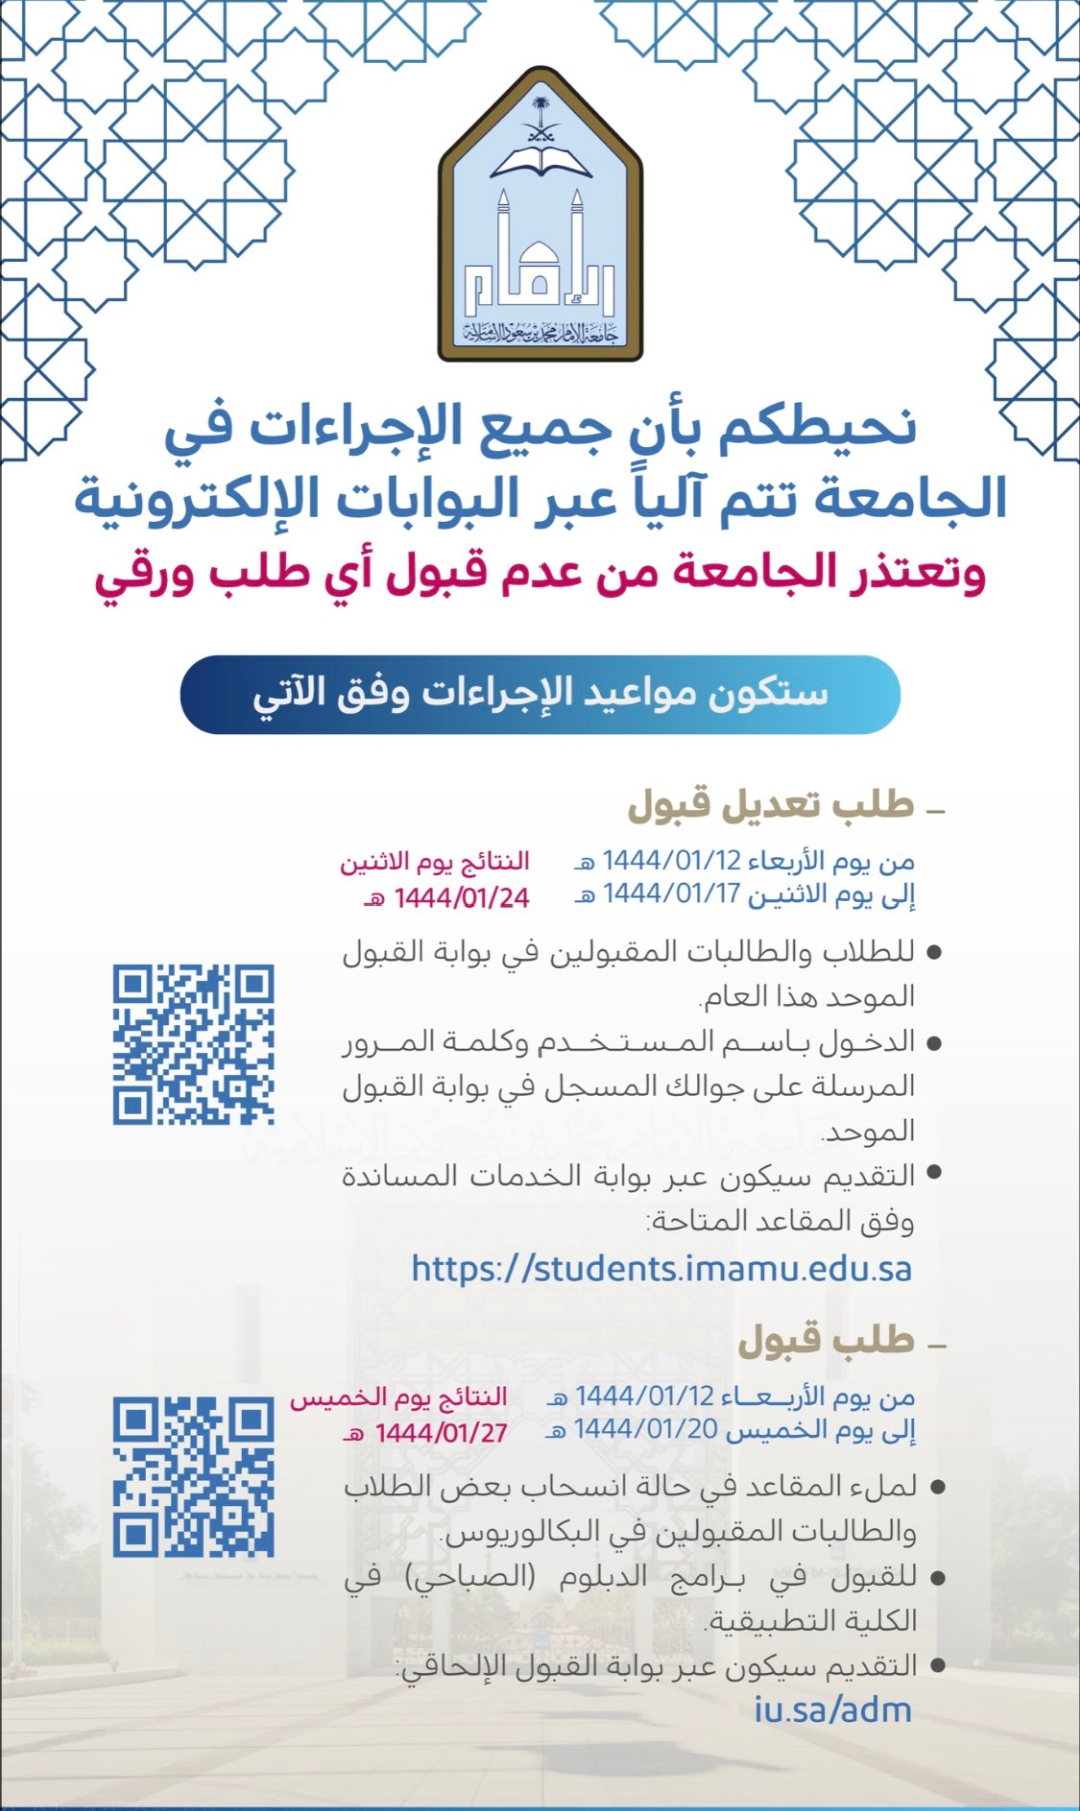 جامعة الامام محمد بن سعود 3 - ماهو موعد التسجيل في برامج الدبلوم فى جامعة الامام محمد بن سعود الأسلامية